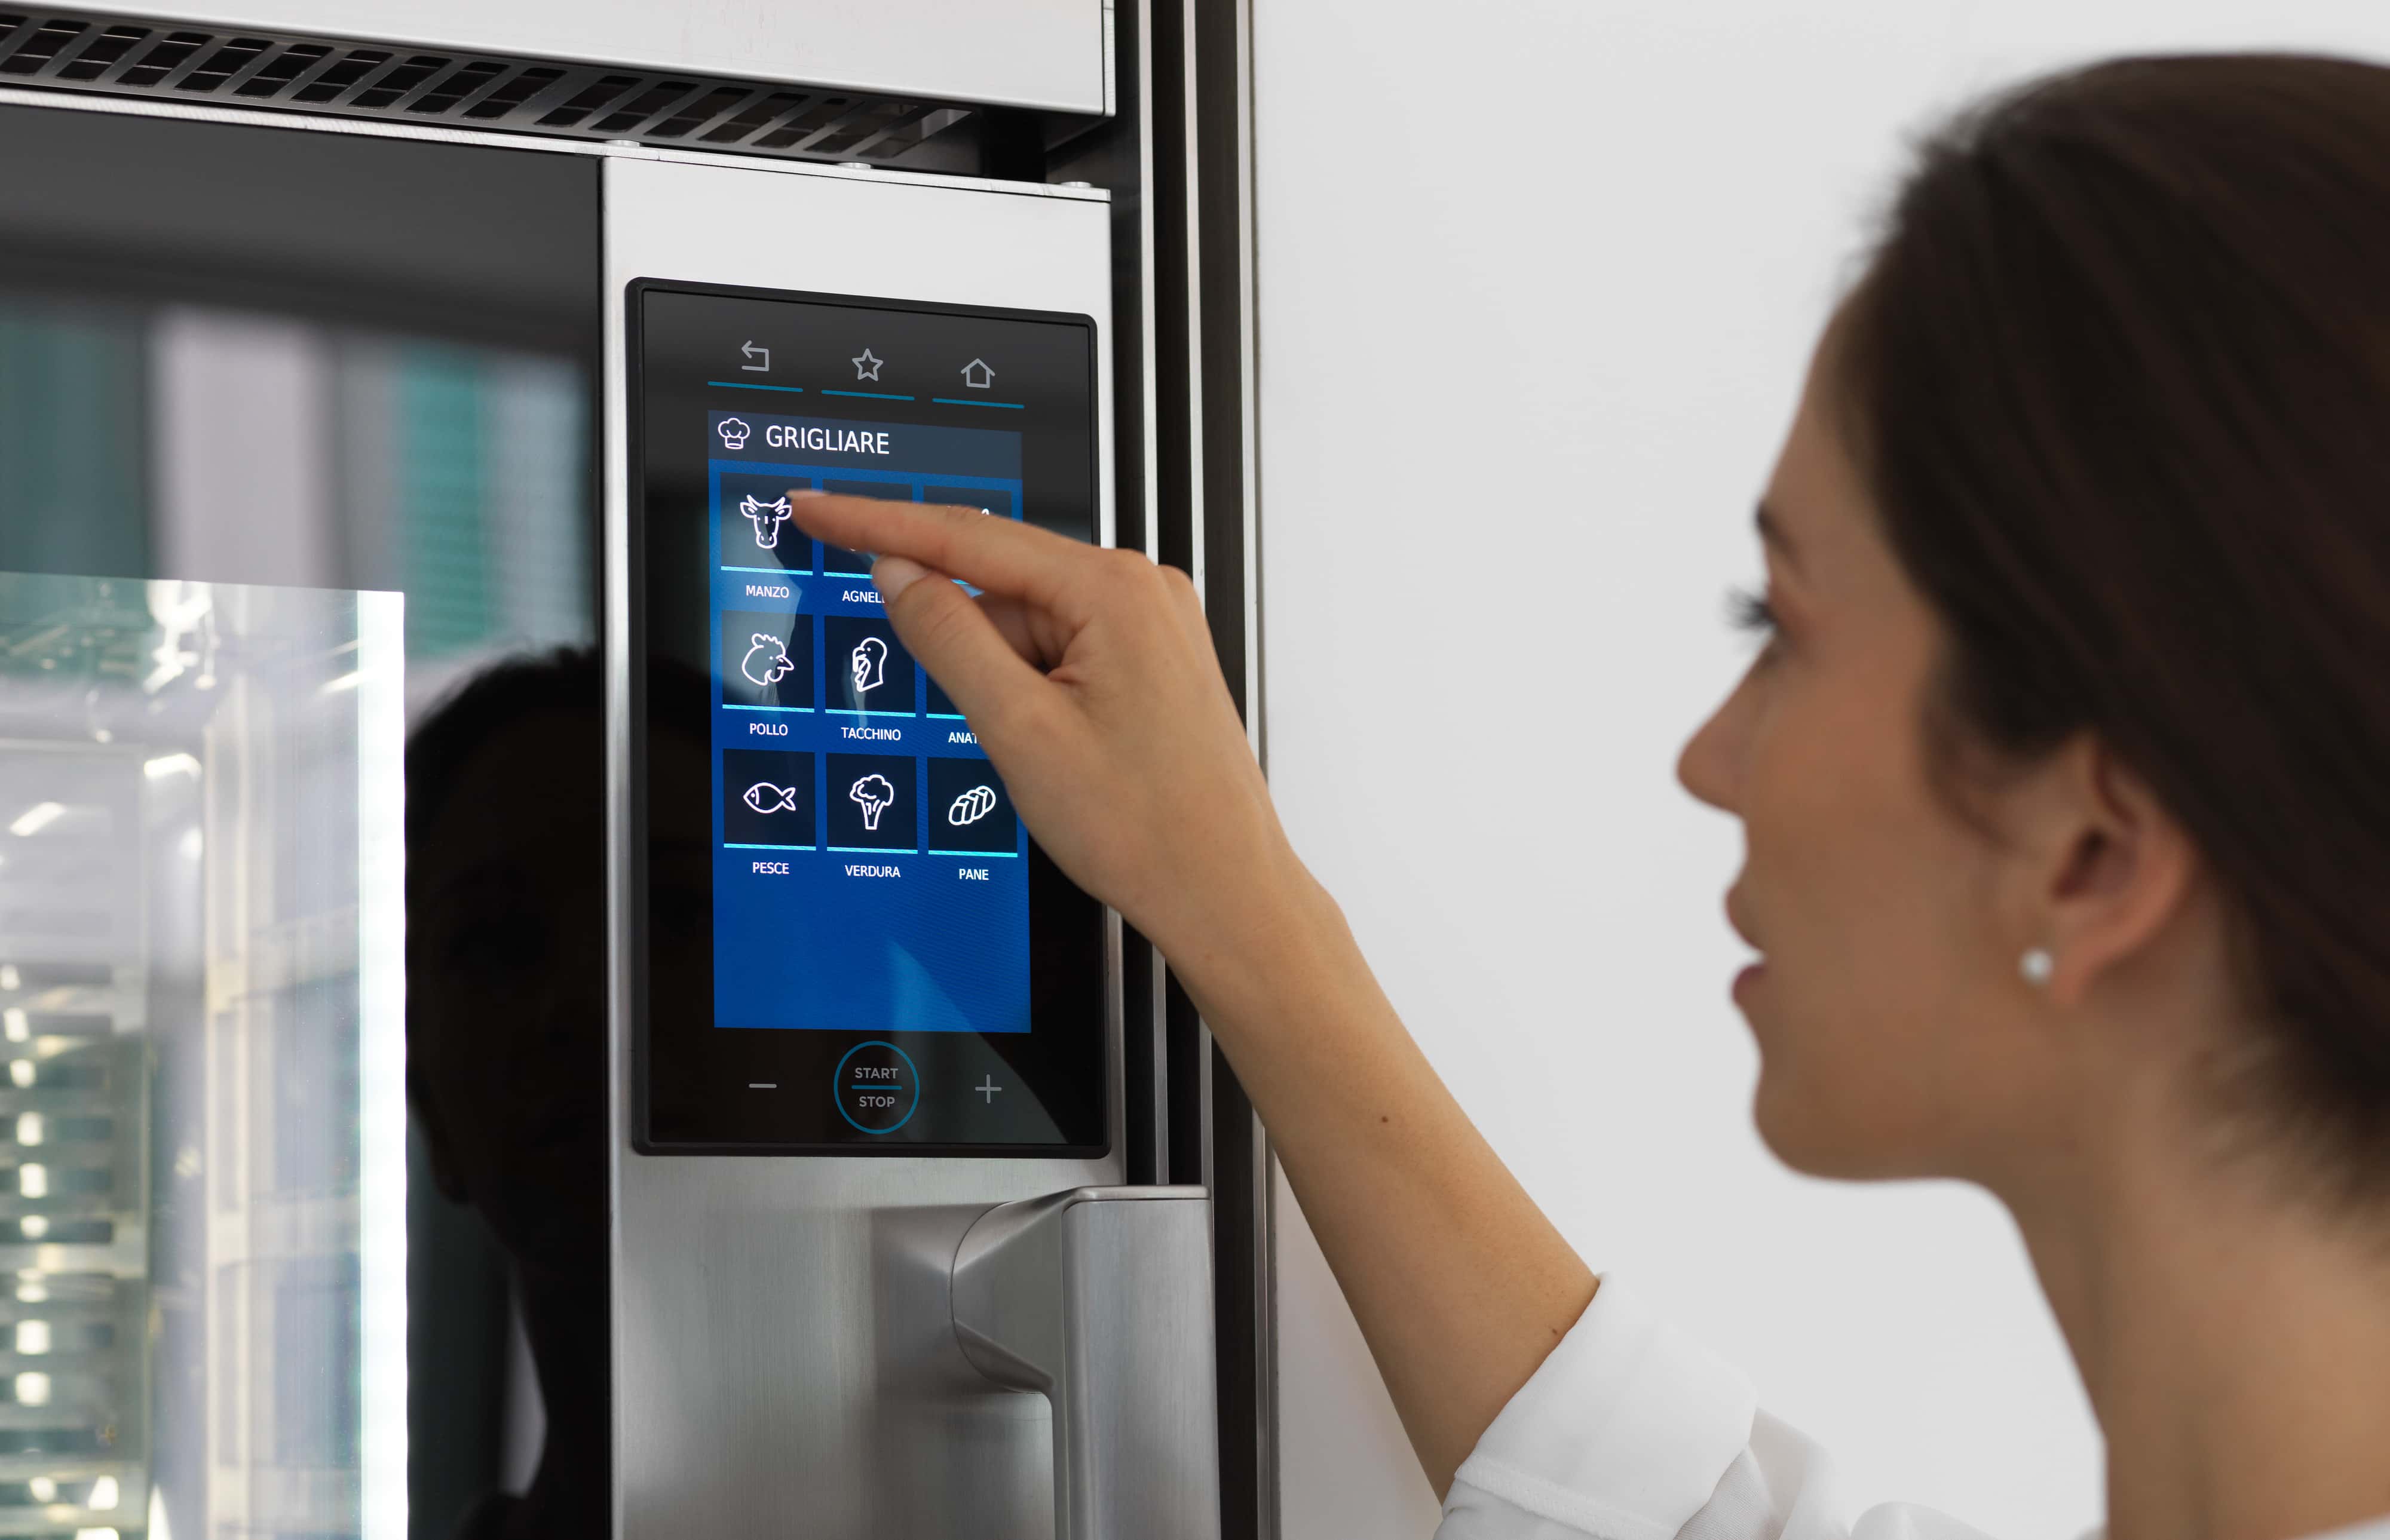 Digitaal bedieningspaneel van de smart ovens van Unox Casa, eenvoudig en intuïtief